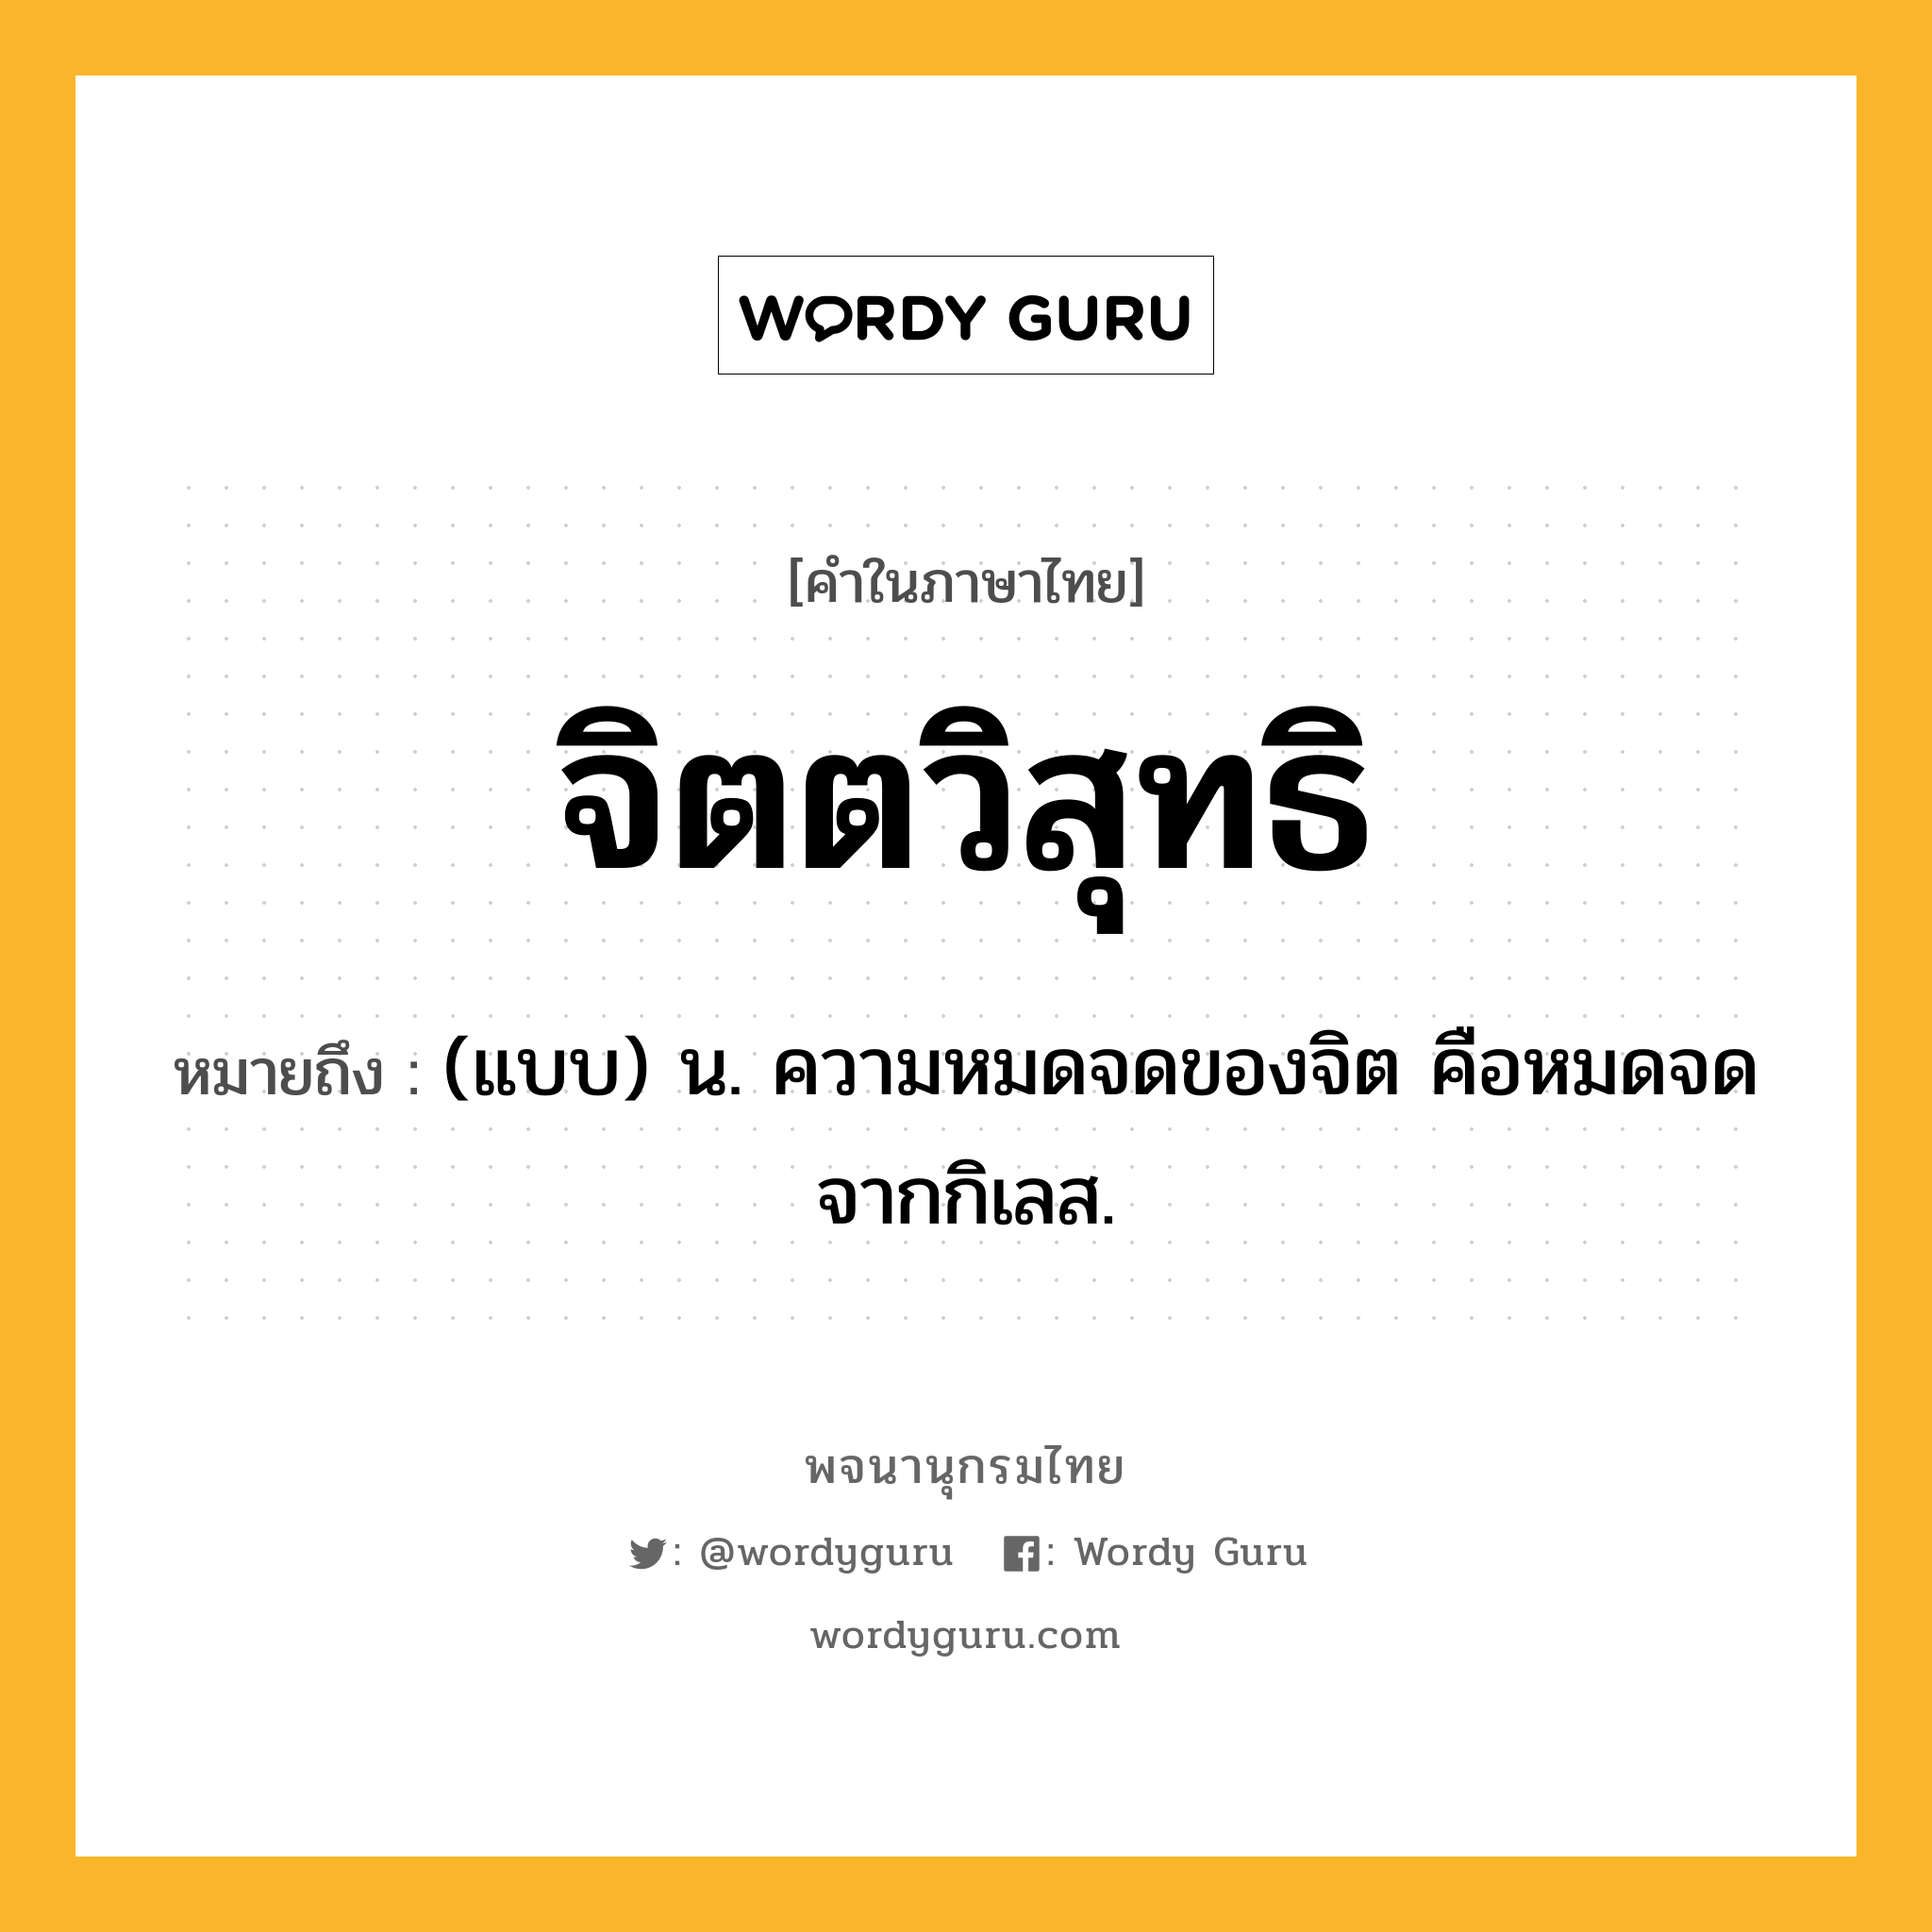 จิตตวิสุทธิ หมายถึงอะไร?, คำในภาษาไทย จิตตวิสุทธิ หมายถึง (แบบ) น. ความหมดจดของจิต คือหมดจดจากกิเลส.